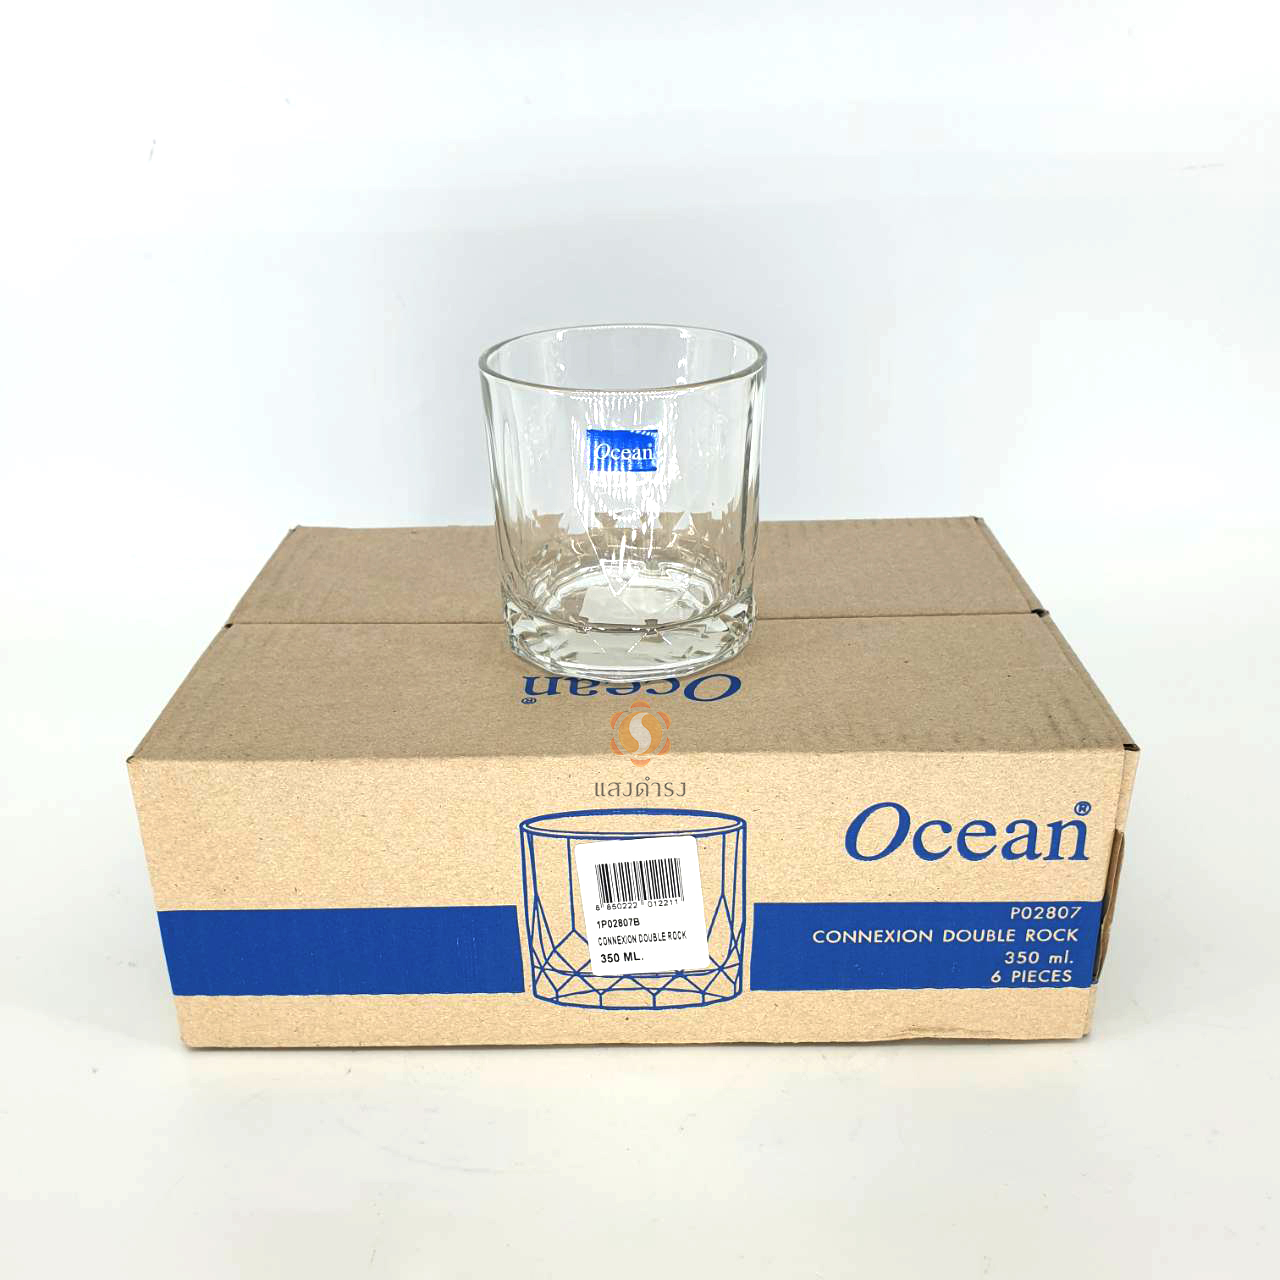 Ocean แก้ว Connexion Double Rock P02807 แก้วโอเชี่ยน แก้วเหล้าในผับ แก้วน้ำ ocean 350 ml 12 ออนซ์  แพ็คละ 6 ใบ แข็งแรง ทนทาน เก็บเงินปลายทางได้ มีของพร้